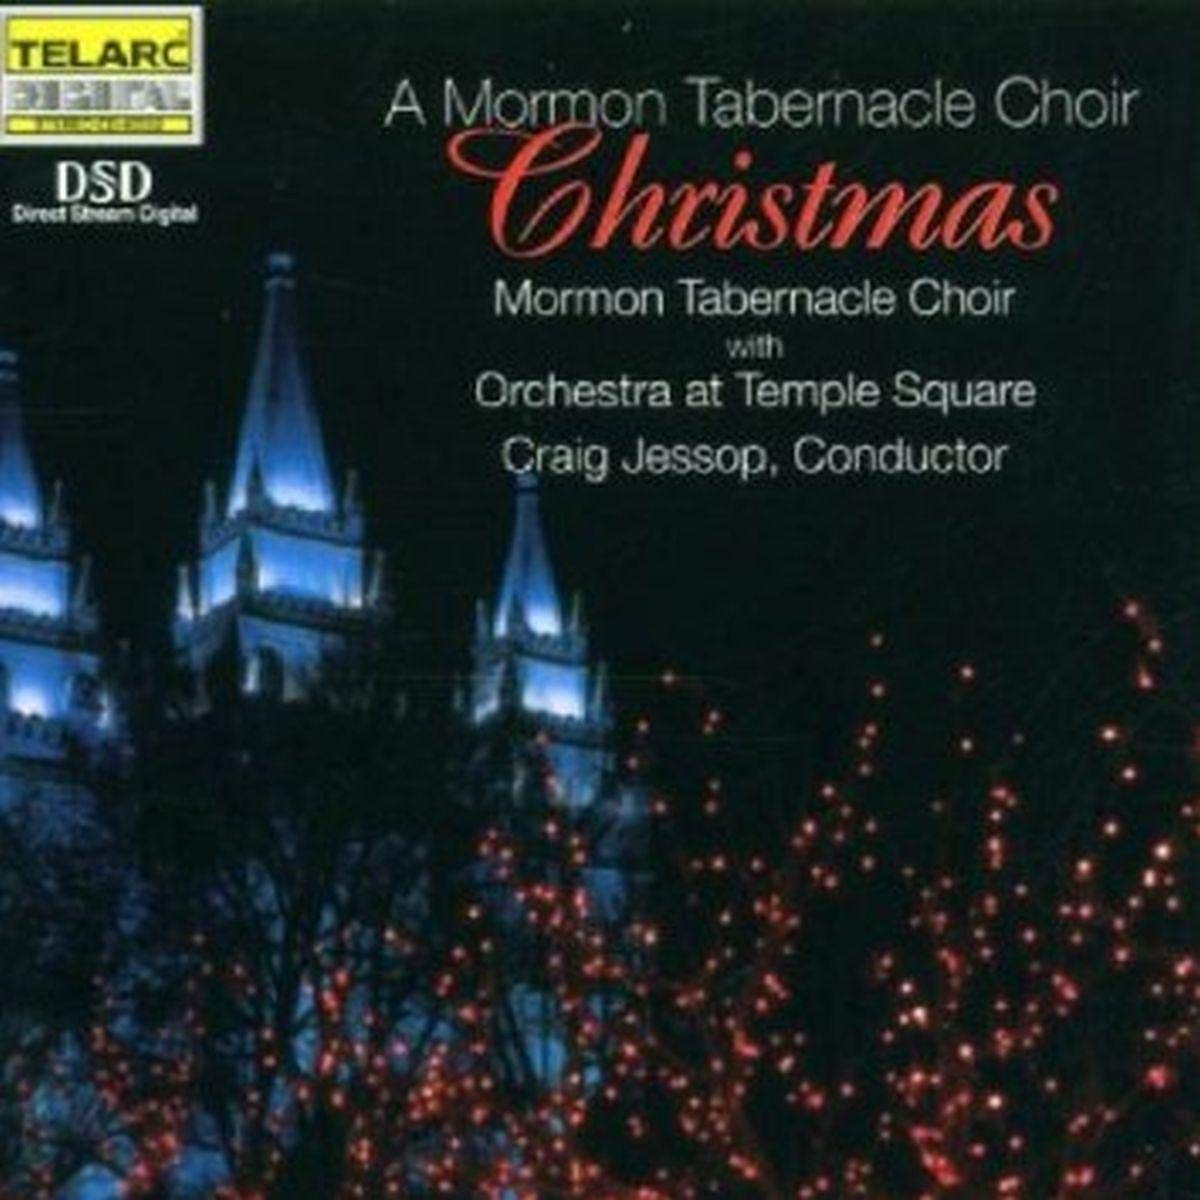 A MORMON TABERNACLE CHOIR CHRISTMAS from TEMPLE SQUARE - Craig Jessop, Mormon Tabernacle Choir (HYBRID SACD)